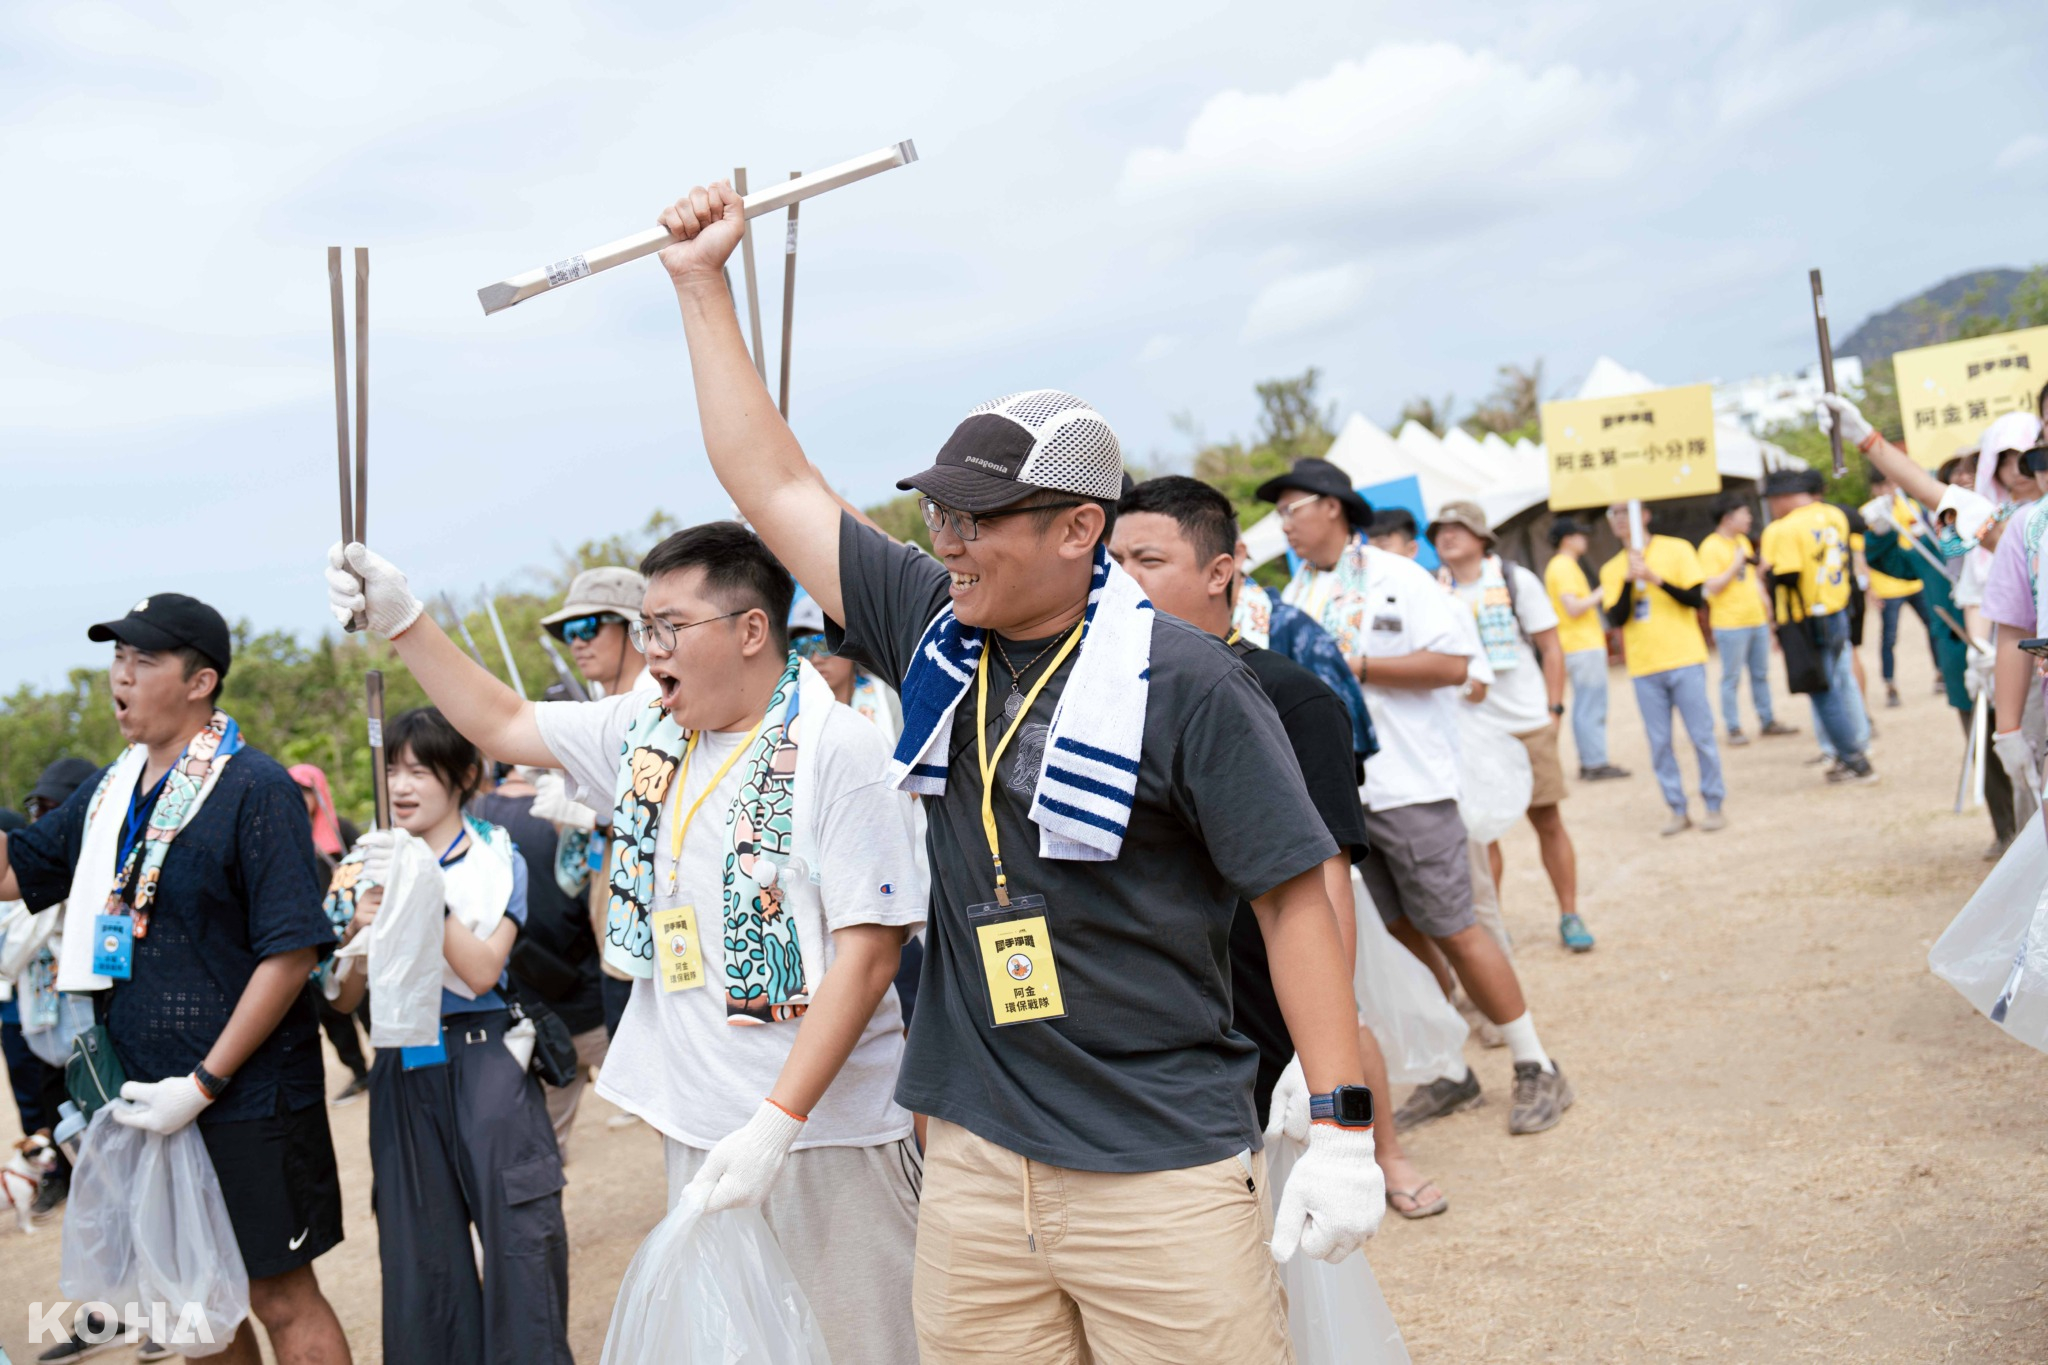 與台灣祭主辦單位一起舉辦「犀手護地球」百人淨灘計畫